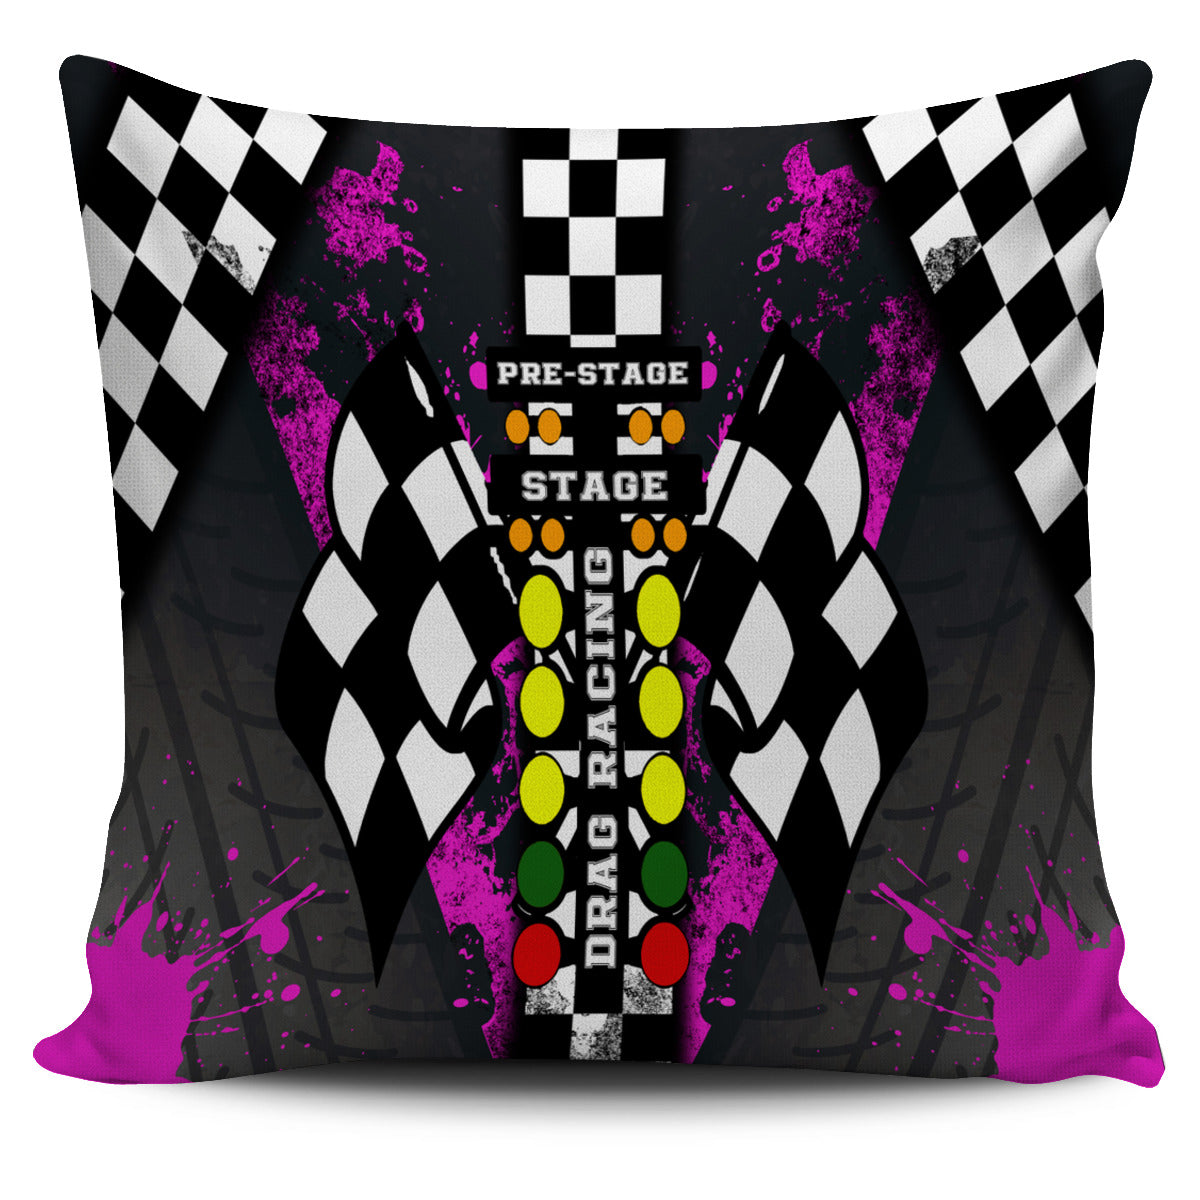 Drag Racing Pillow Covers Pink